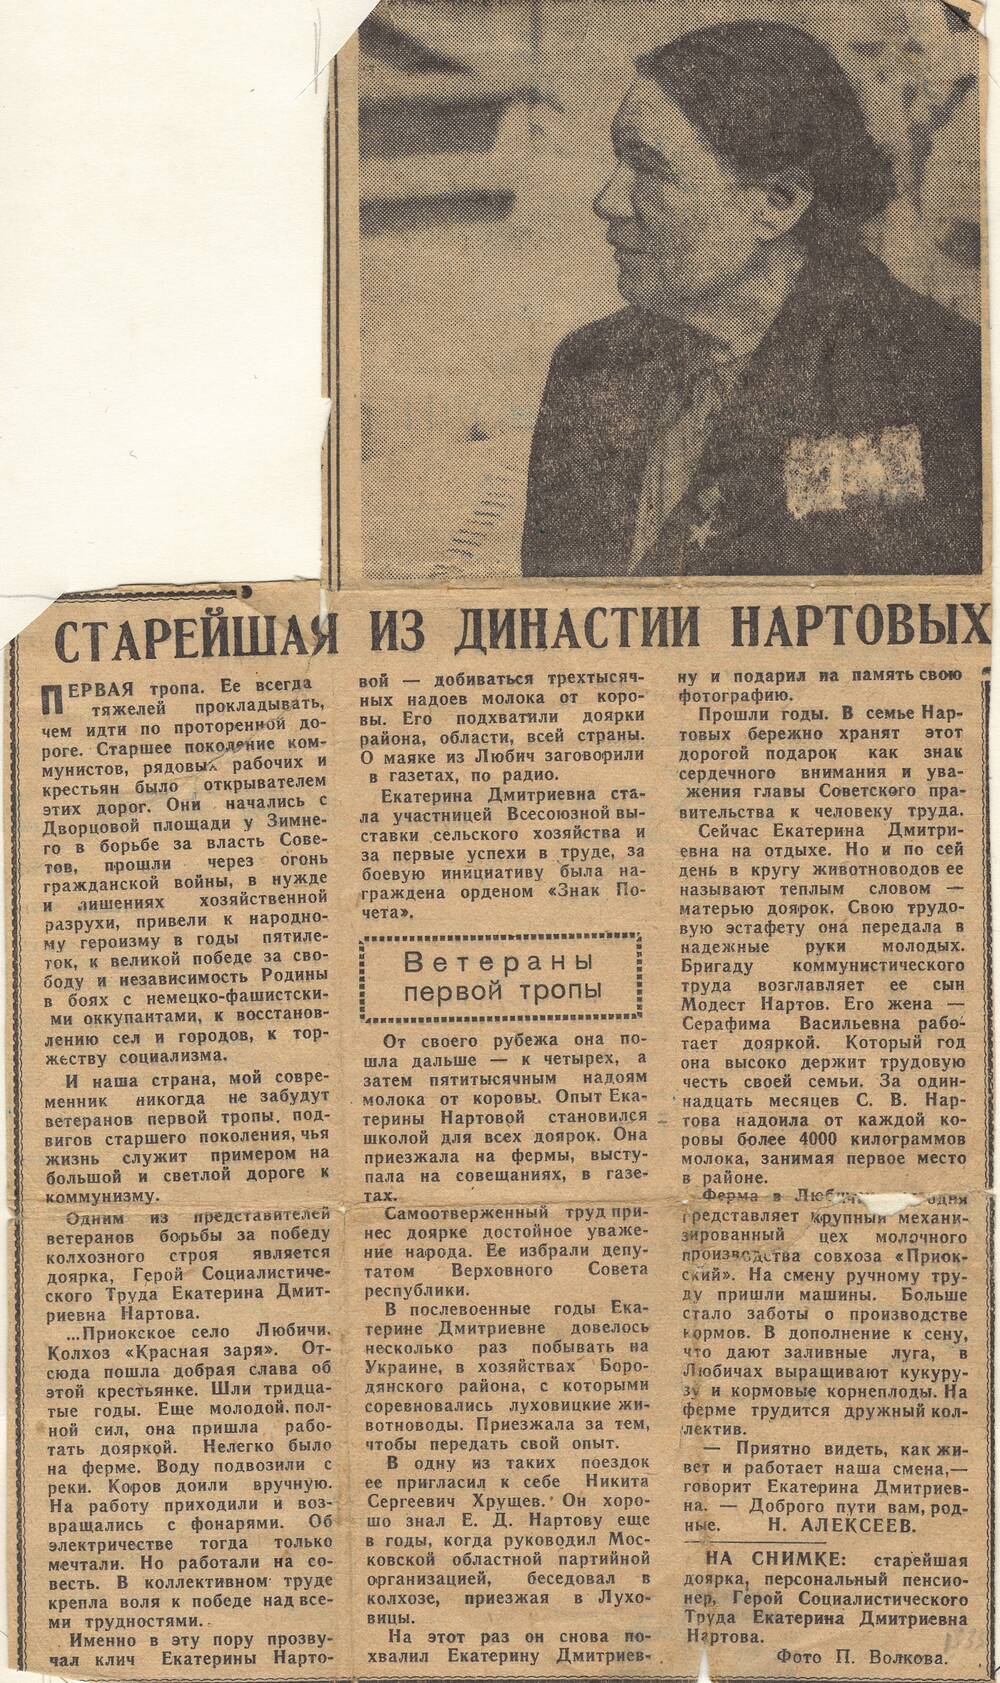 Статья из газеты Старейшая из династии Нартовых1967 год